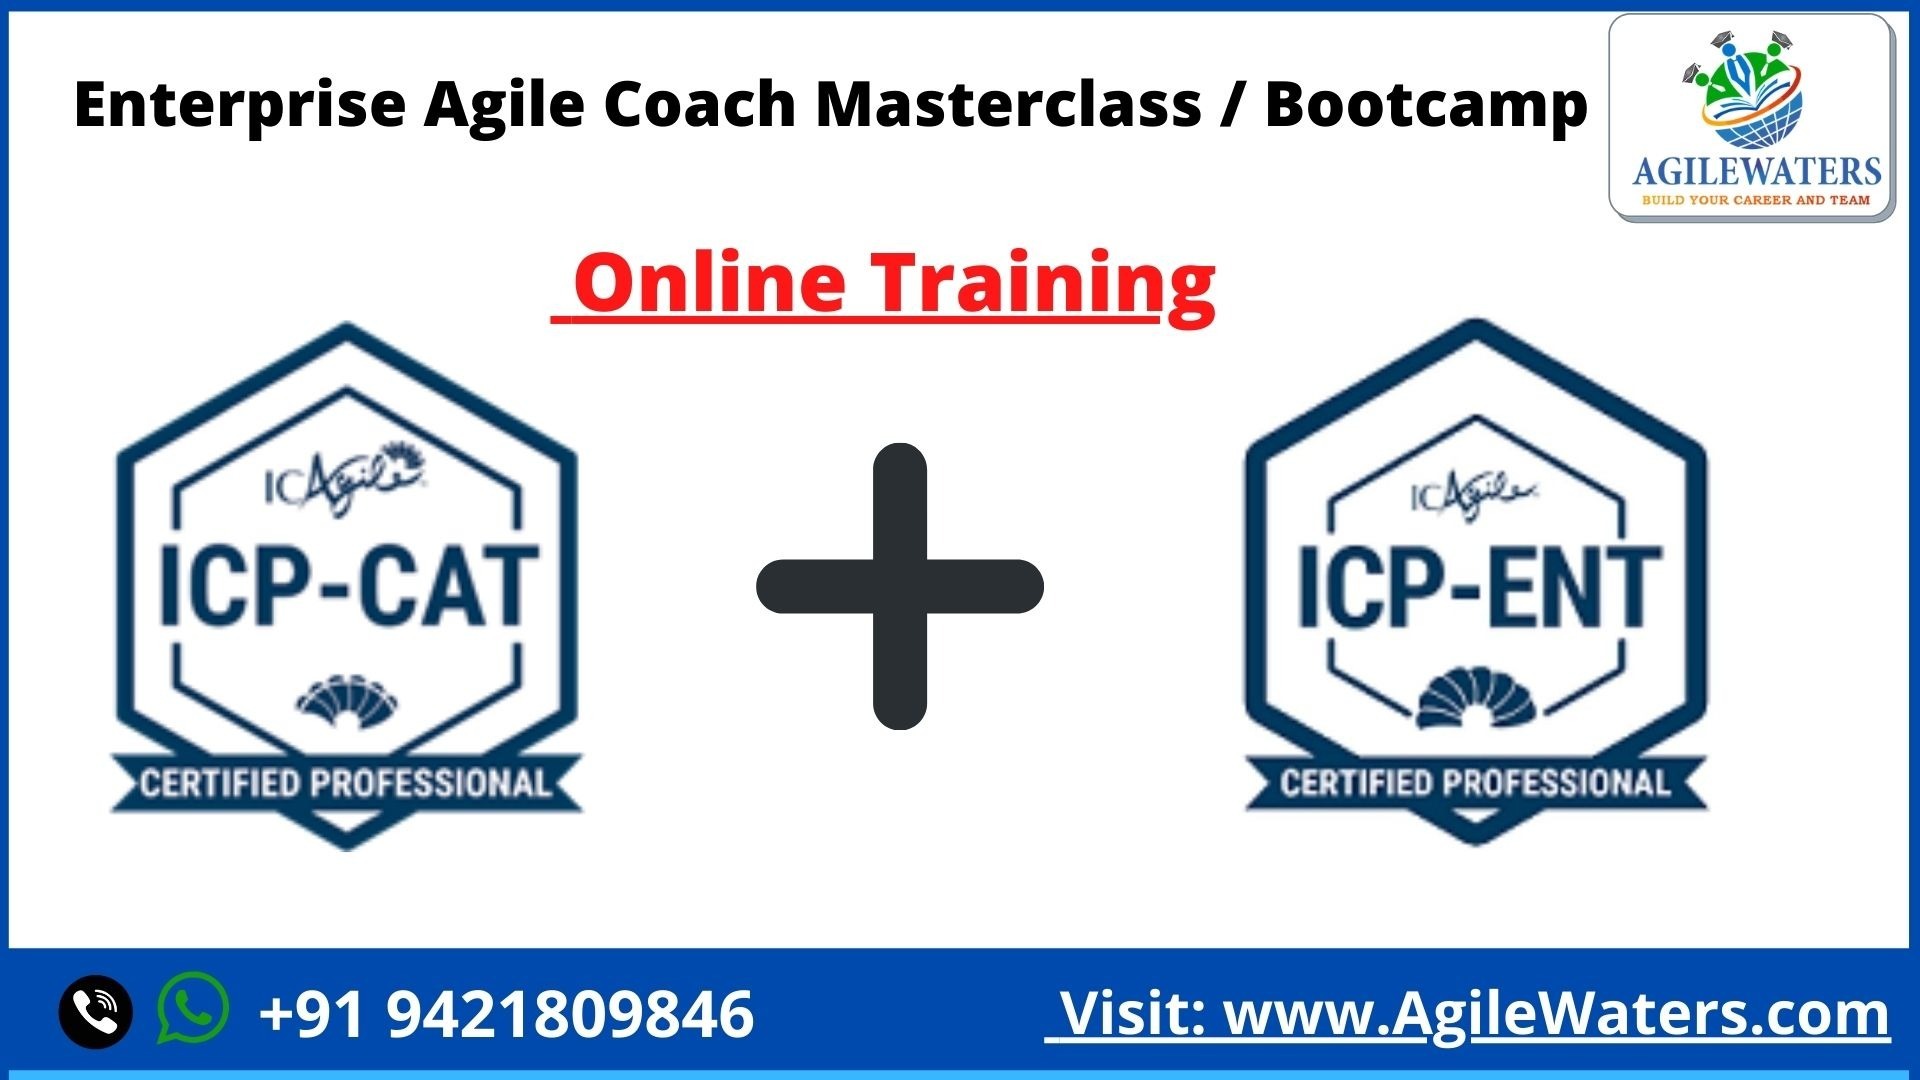 Enterprise Agile Coach Masterclass / Bootcamp, Pune, Maharashtra, India